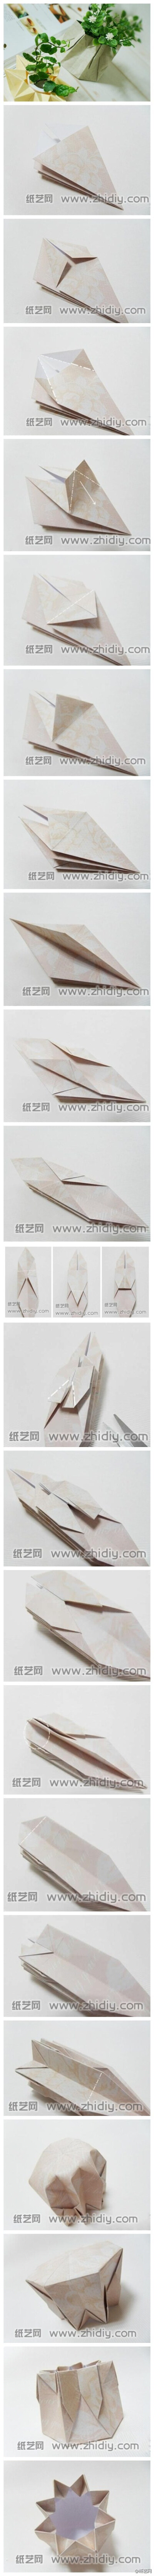 【折纸教程】折纸花瓶